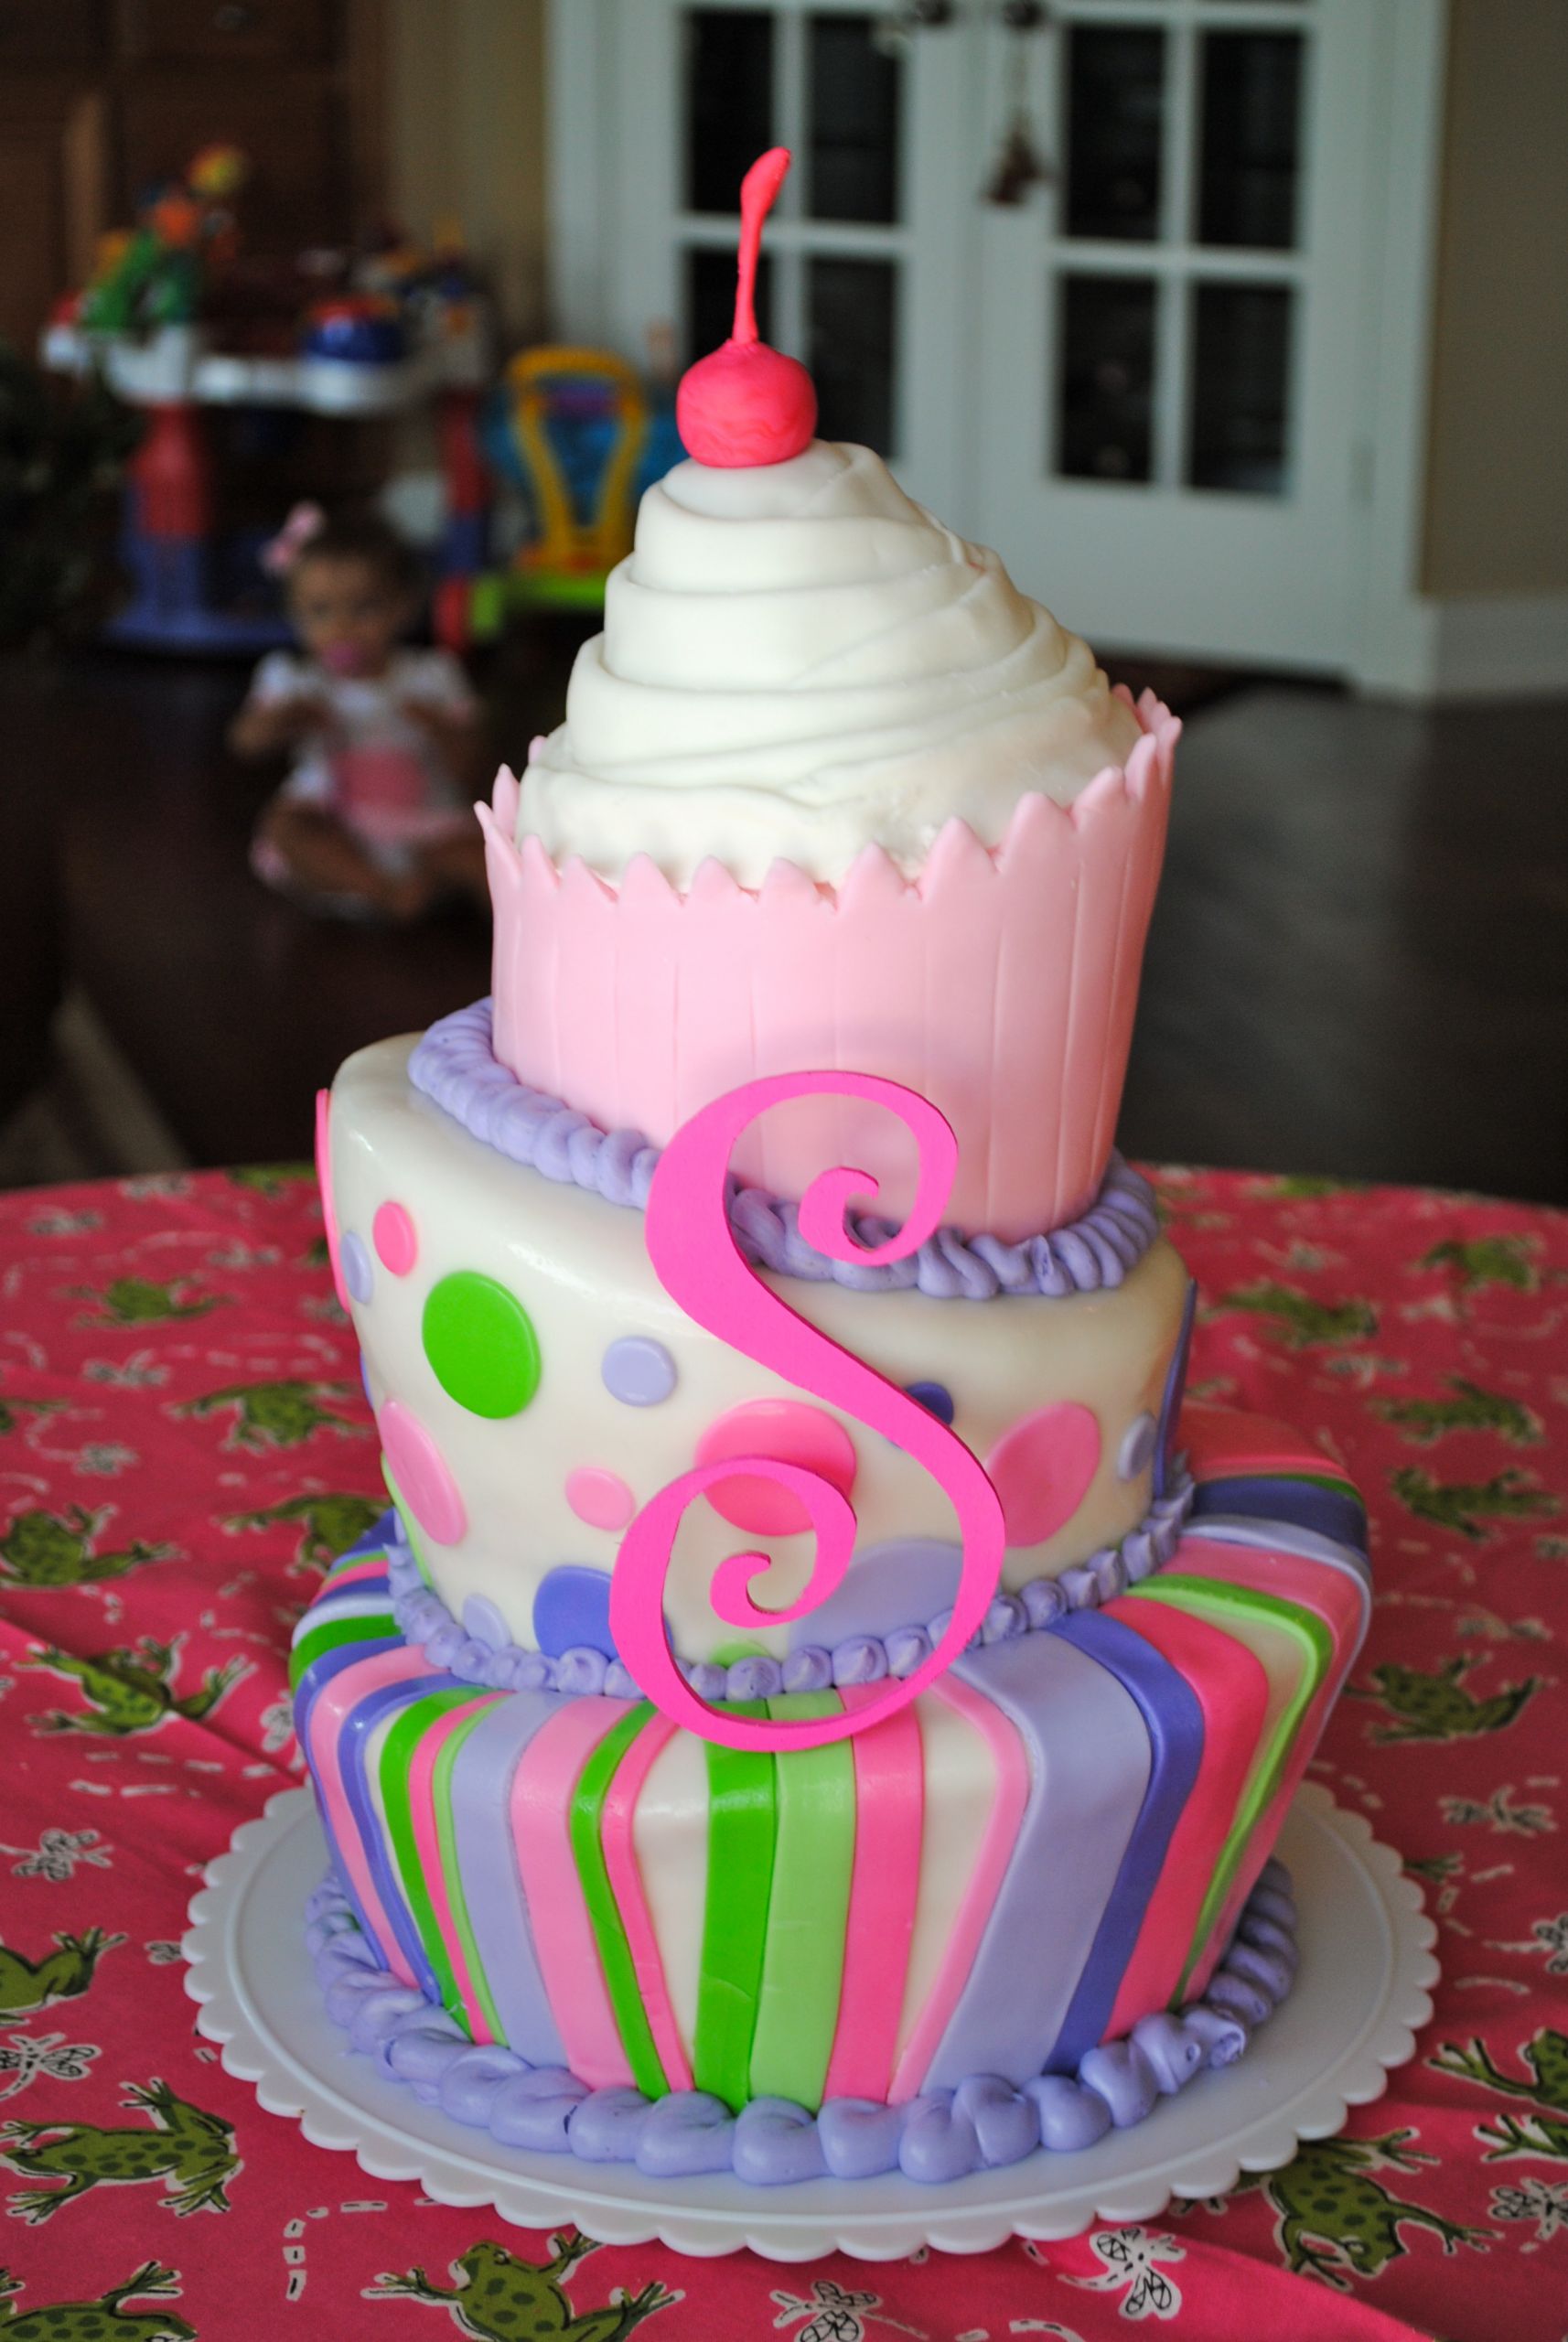 Cupcake Birthday Cakes
 Topsy Turvy Cupcake Cake